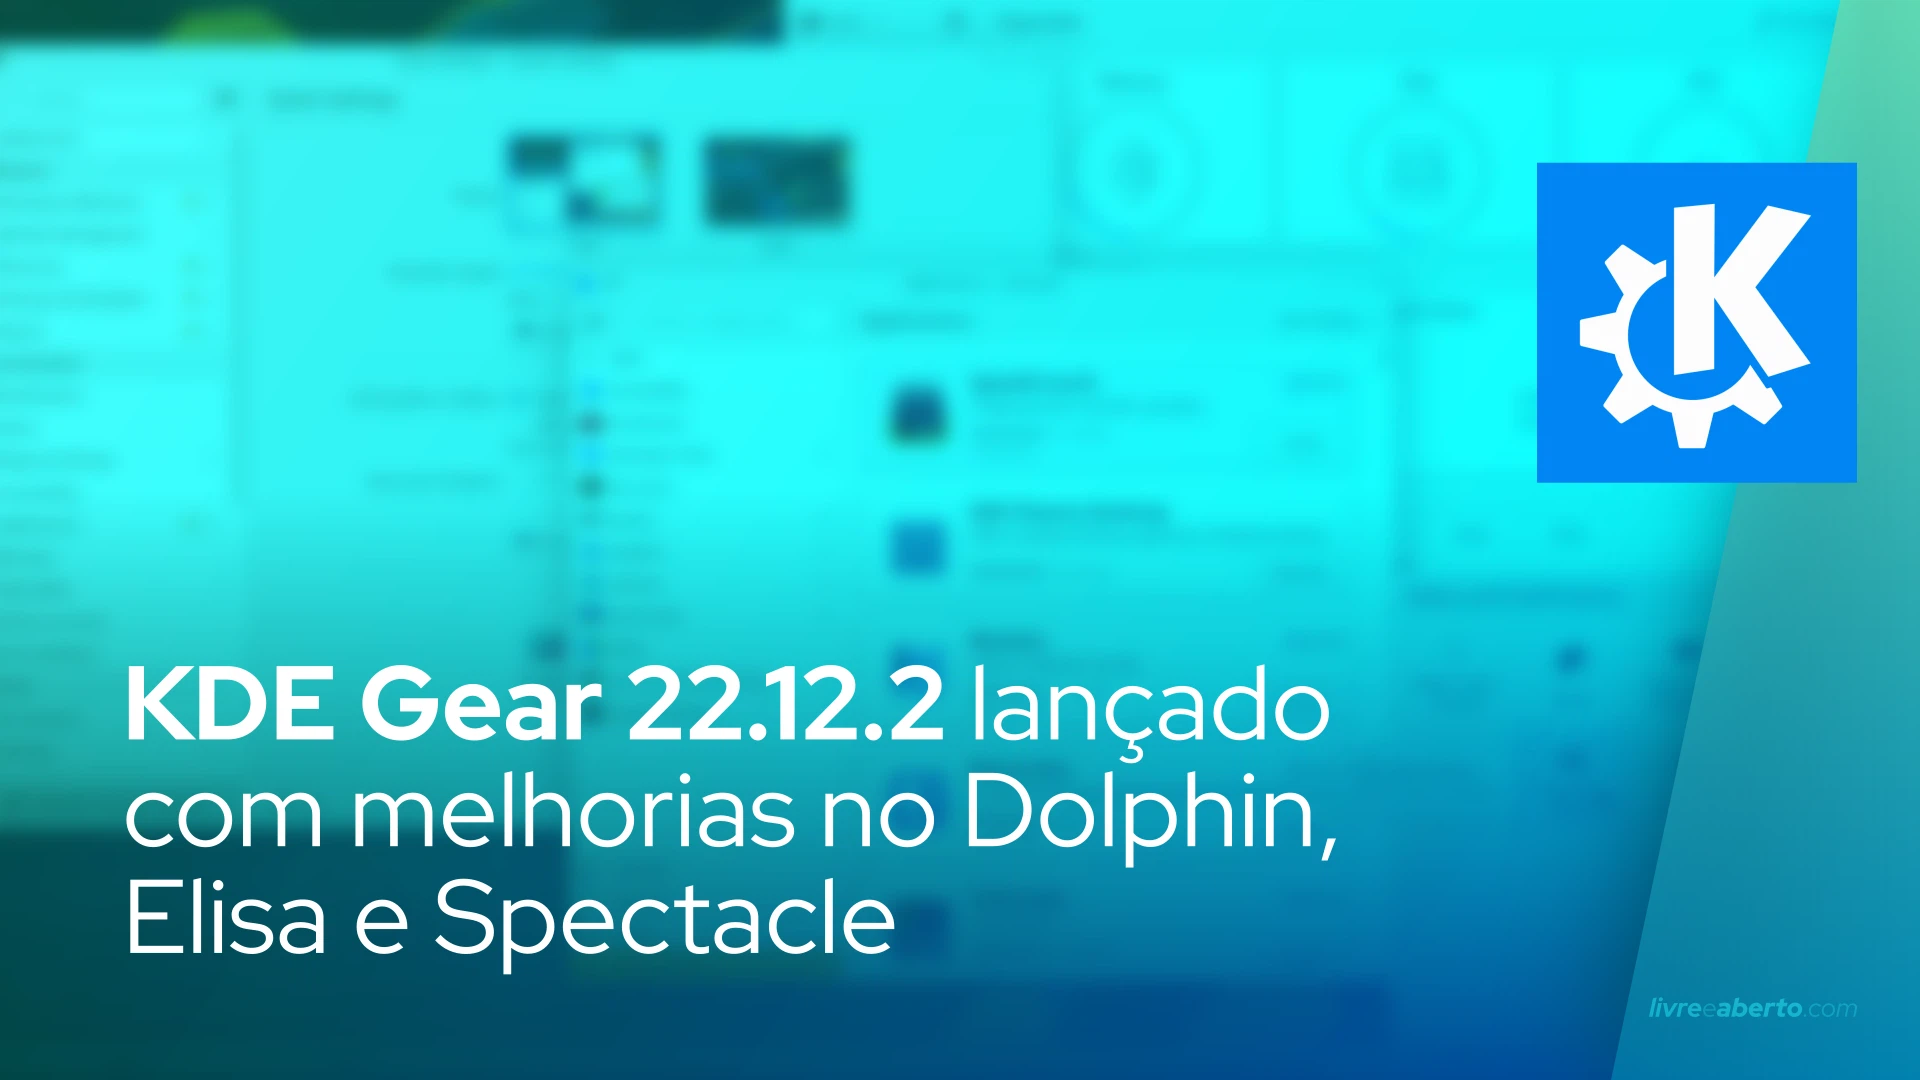 KDE Gear 22.12.2 lançado com melhorias no Dolphin, Elisa e Spectacle